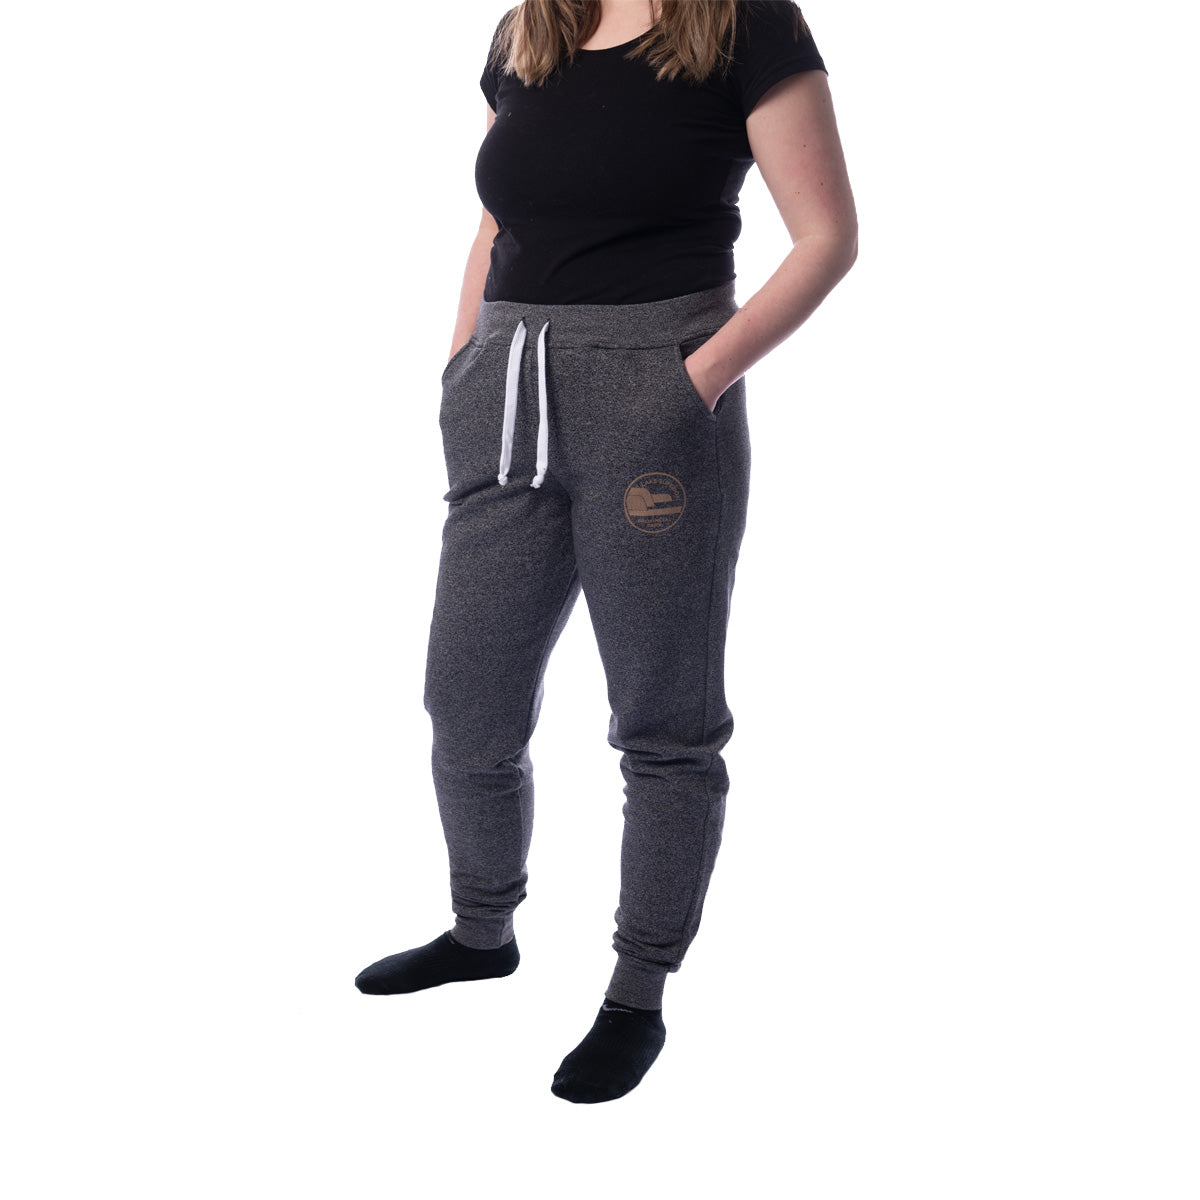 Sale - Algonquin - Park Crest Track Pants (Women's Fit)